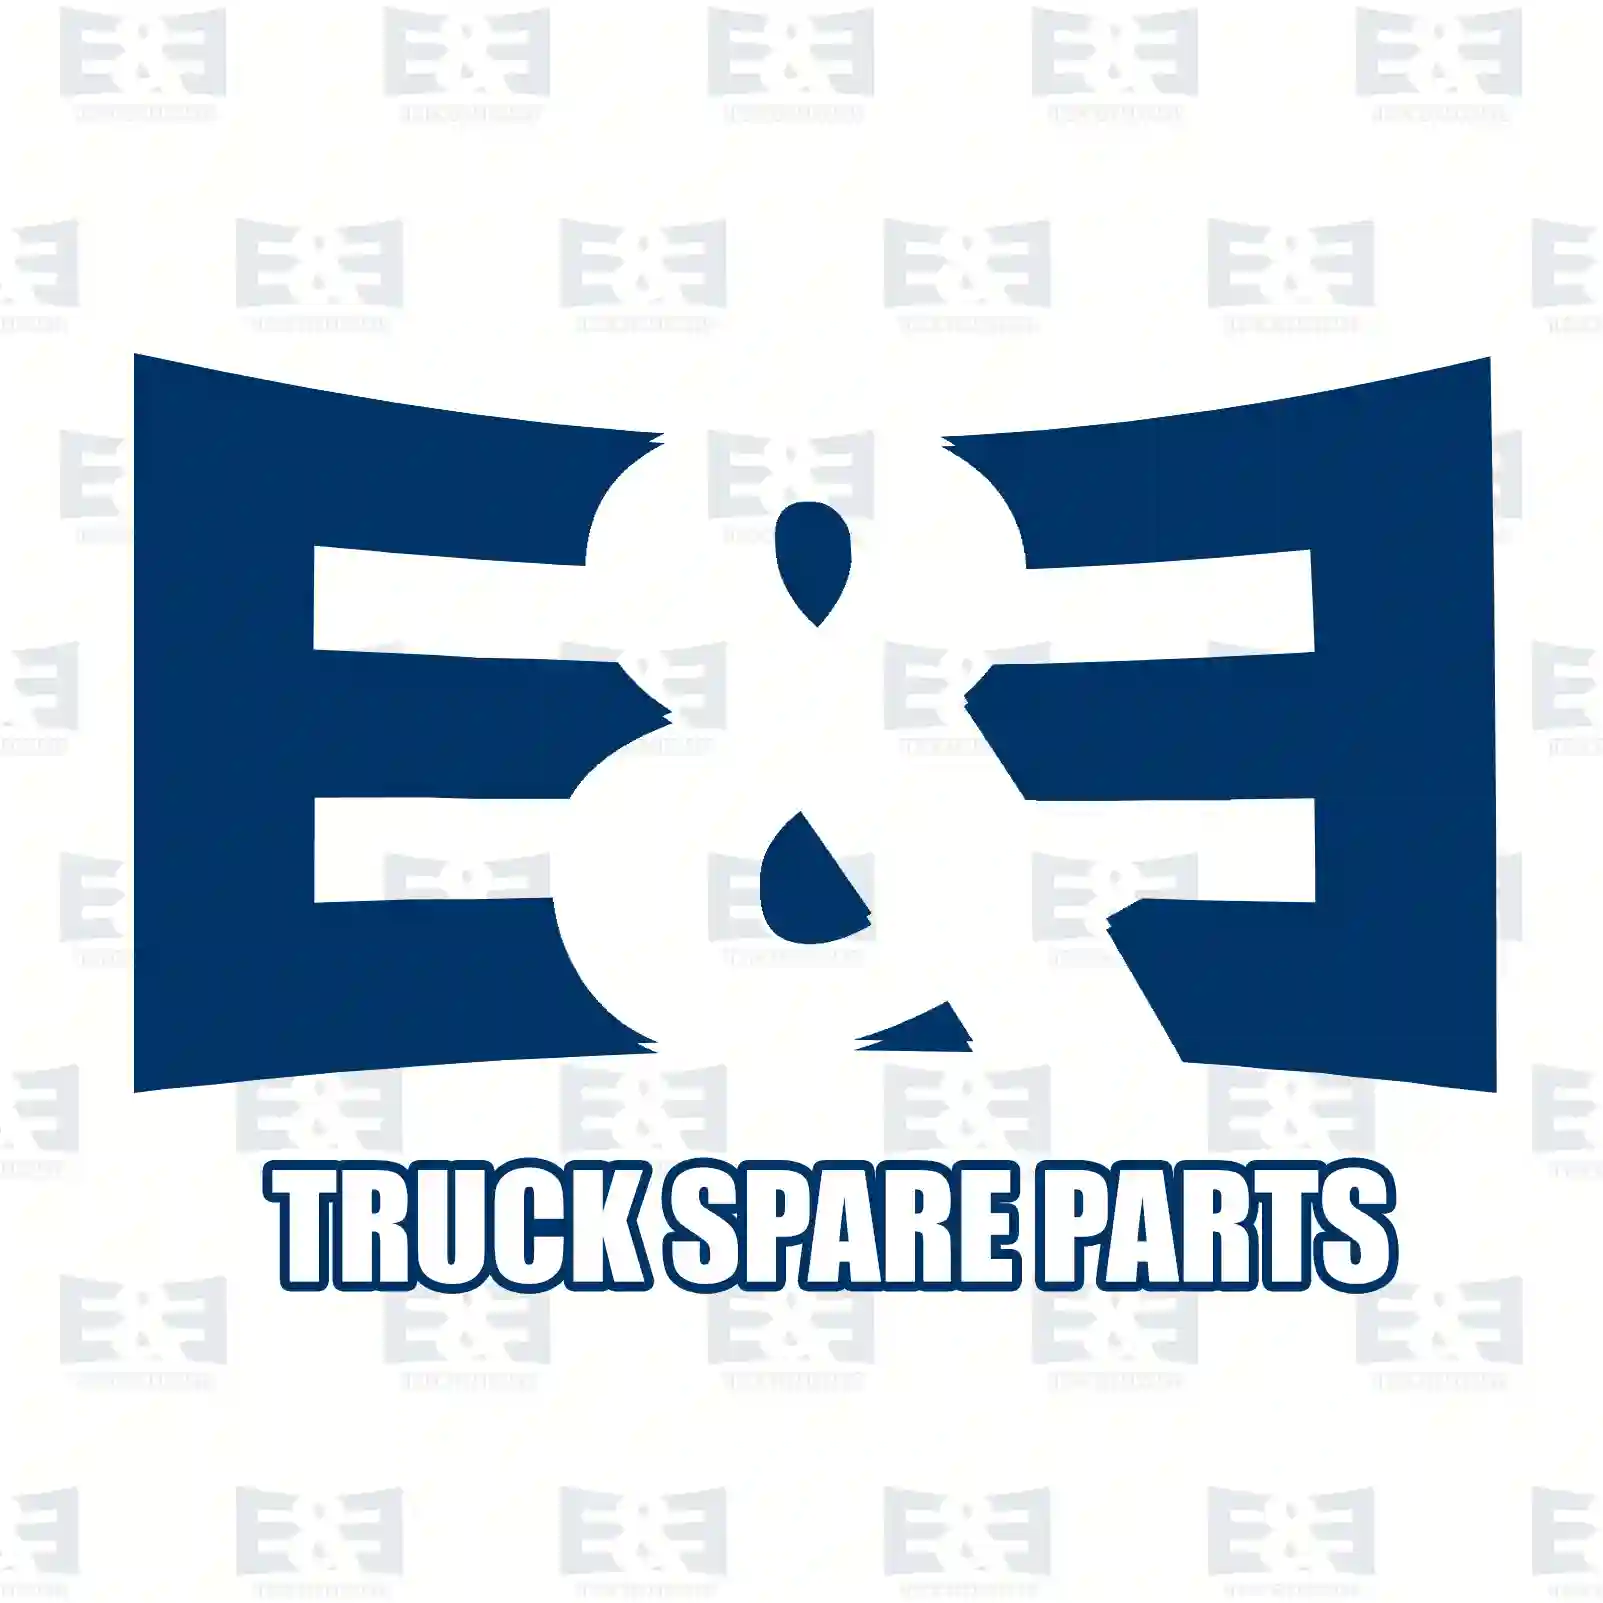 Gear shift rod, 2E2277283, 1452394, 1755657 ||  2E2277283 E&E Truck Spare Parts | Truck Spare Parts, Auotomotive Spare Parts Gear shift rod, 2E2277283, 1452394, 1755657 ||  2E2277283 E&E Truck Spare Parts | Truck Spare Parts, Auotomotive Spare Parts